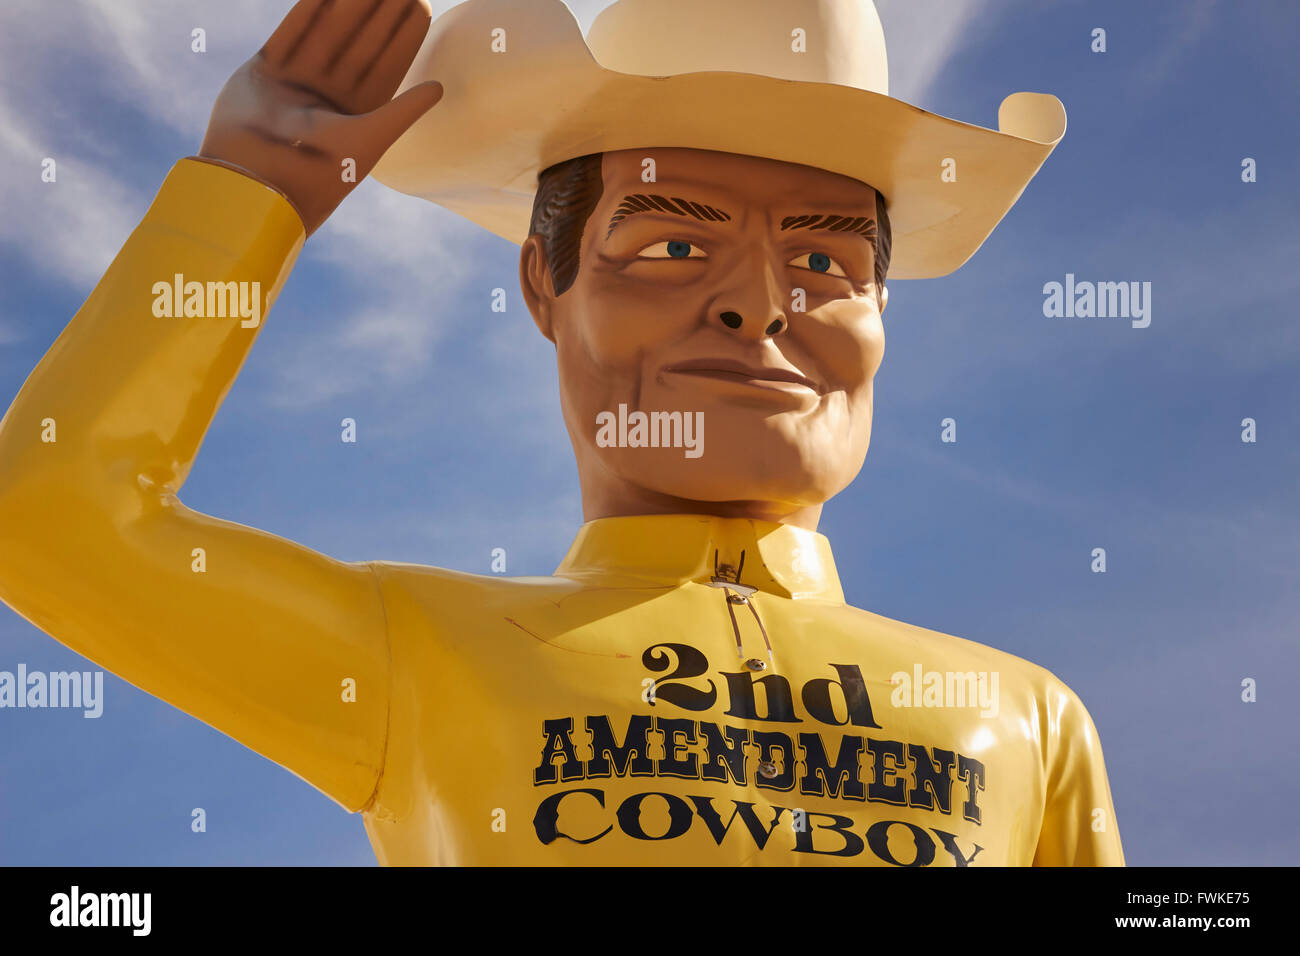 Deuxième amendement statue cow-boy, Amarillo, Texas, États-Unis Banque D'Images